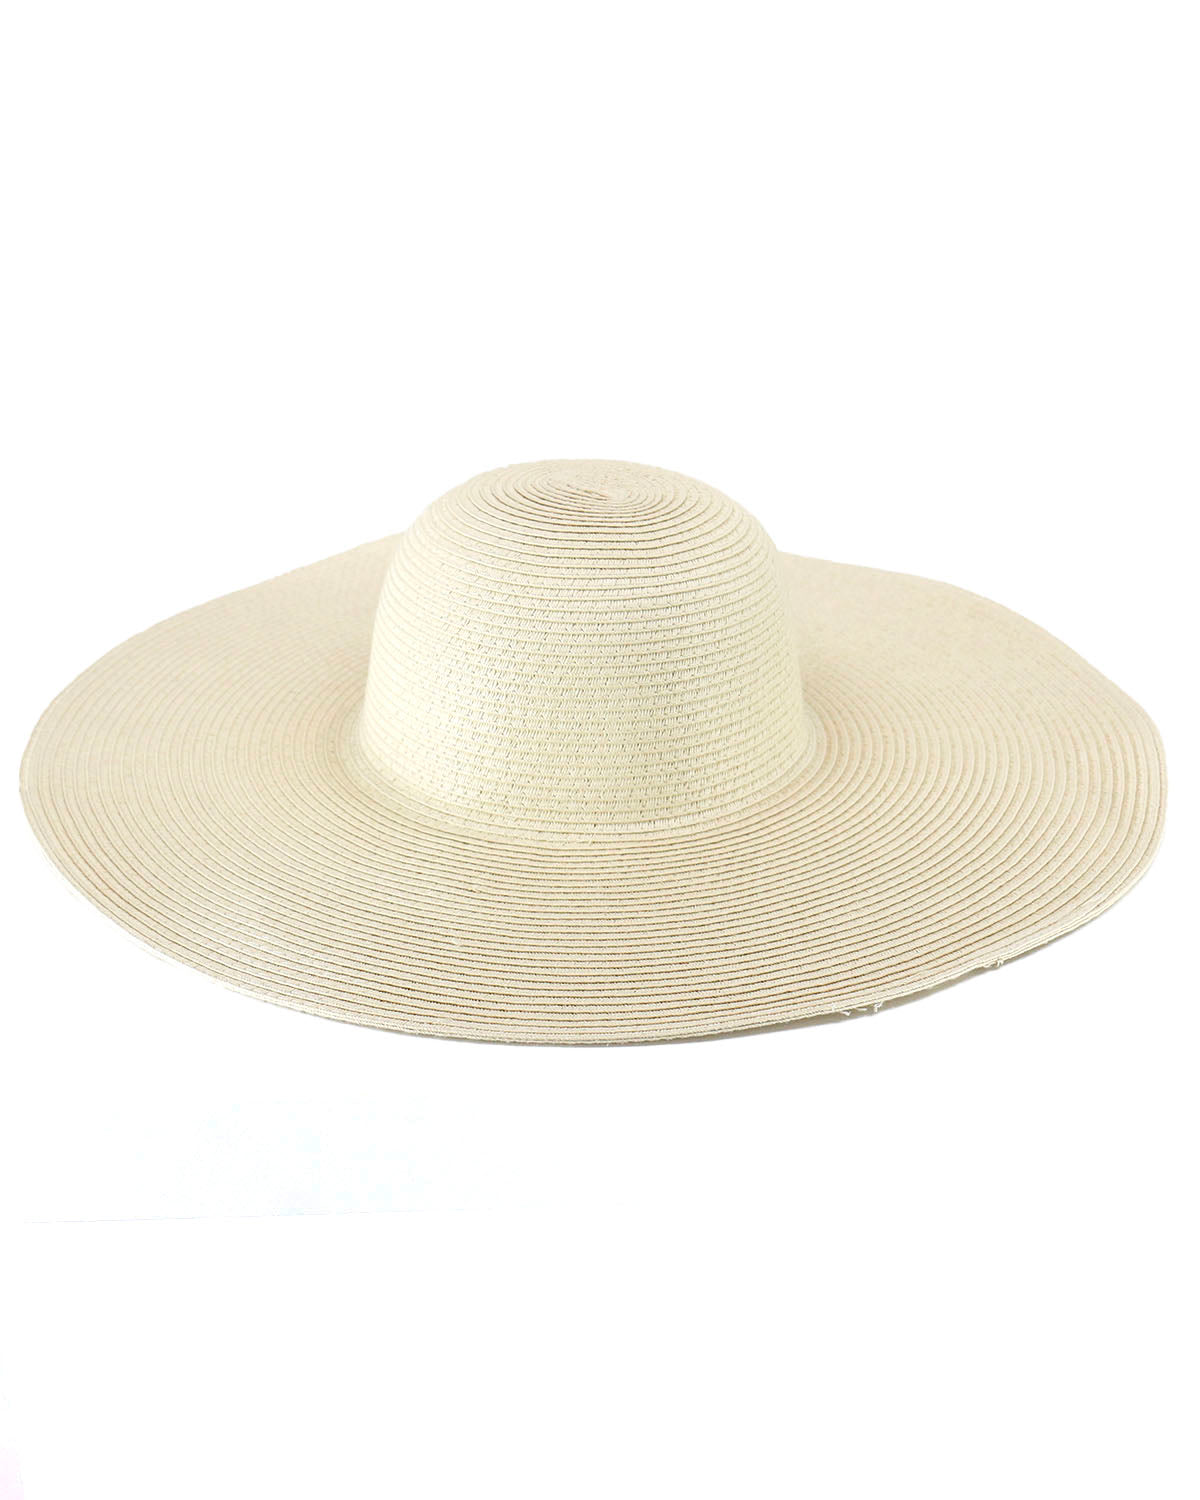 Maxi xxl straw hat, Designer Collection